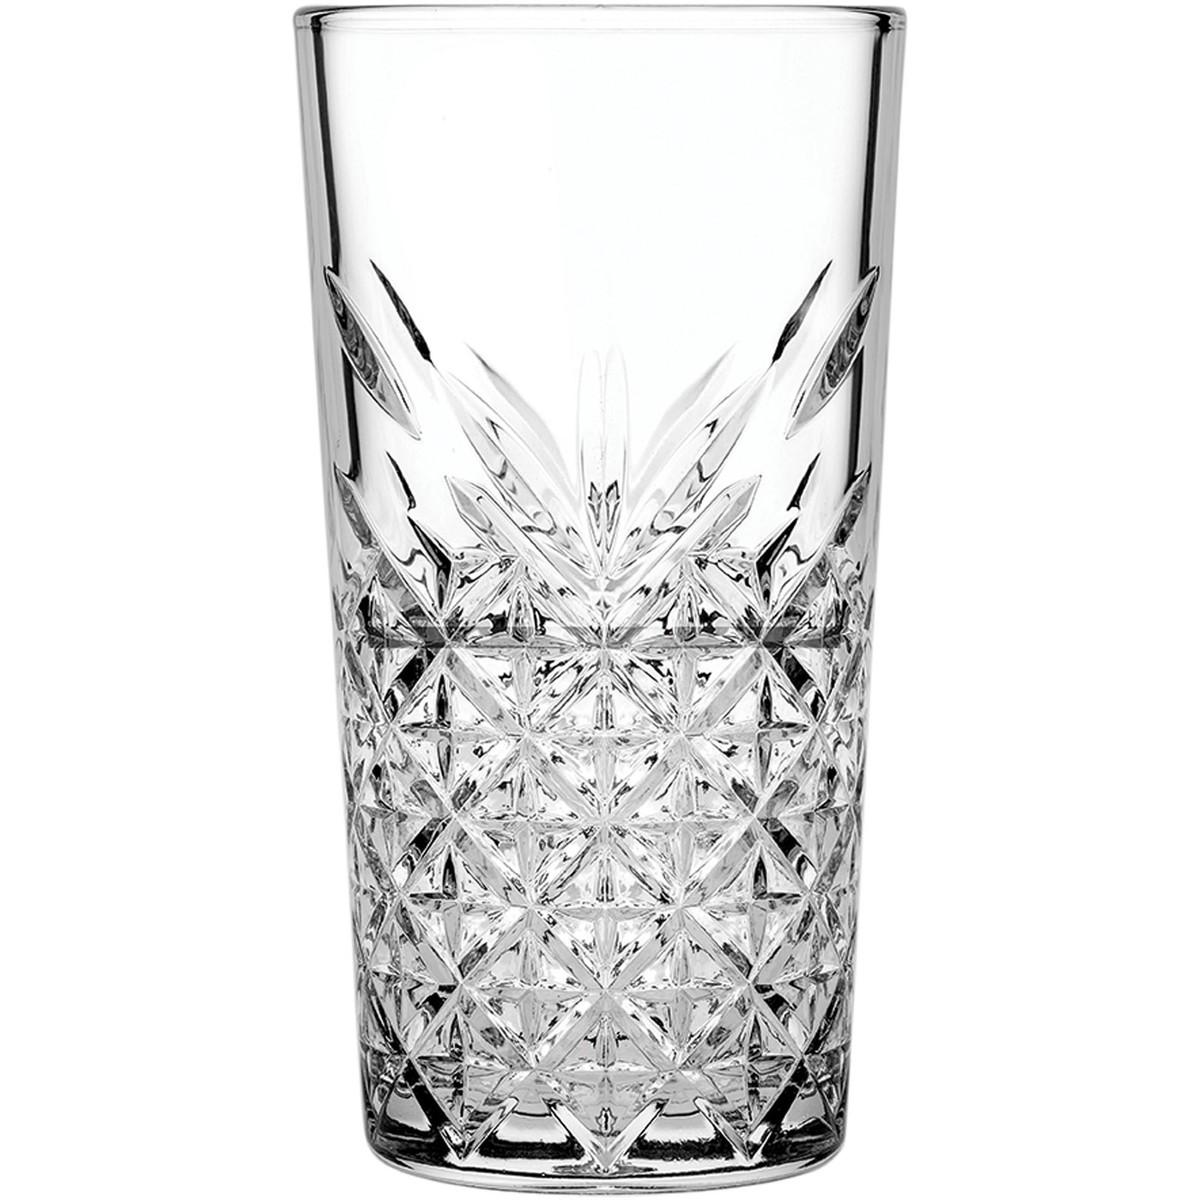 Glasserie "Timeless" Longdrinkglas 475ml